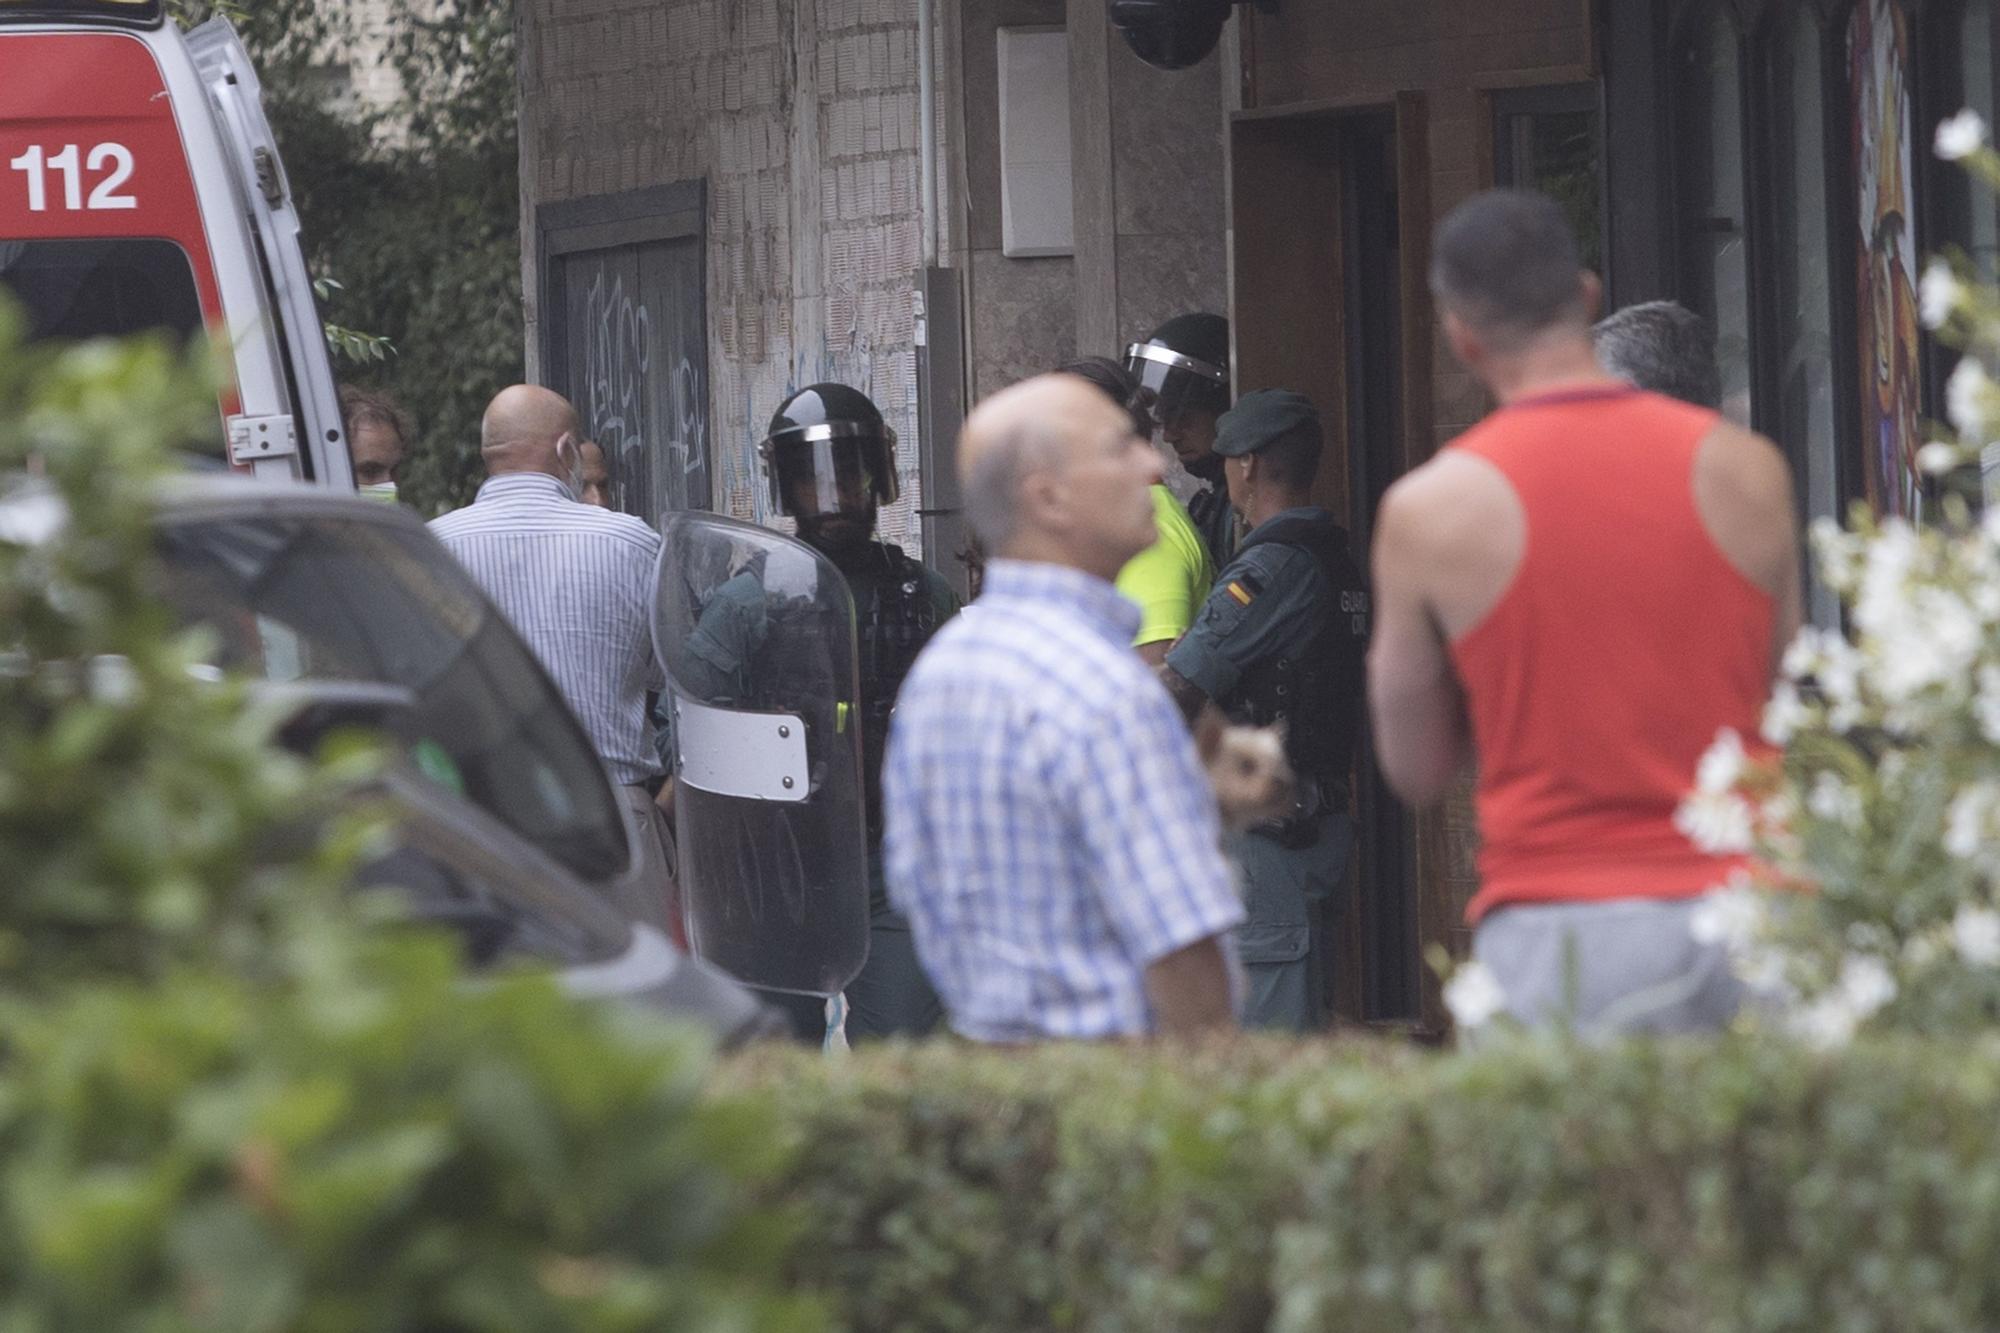 En imágenes: Un joven armado se atrinchera en un piso y provoca gran alarma en el vecindario, en Castrillón